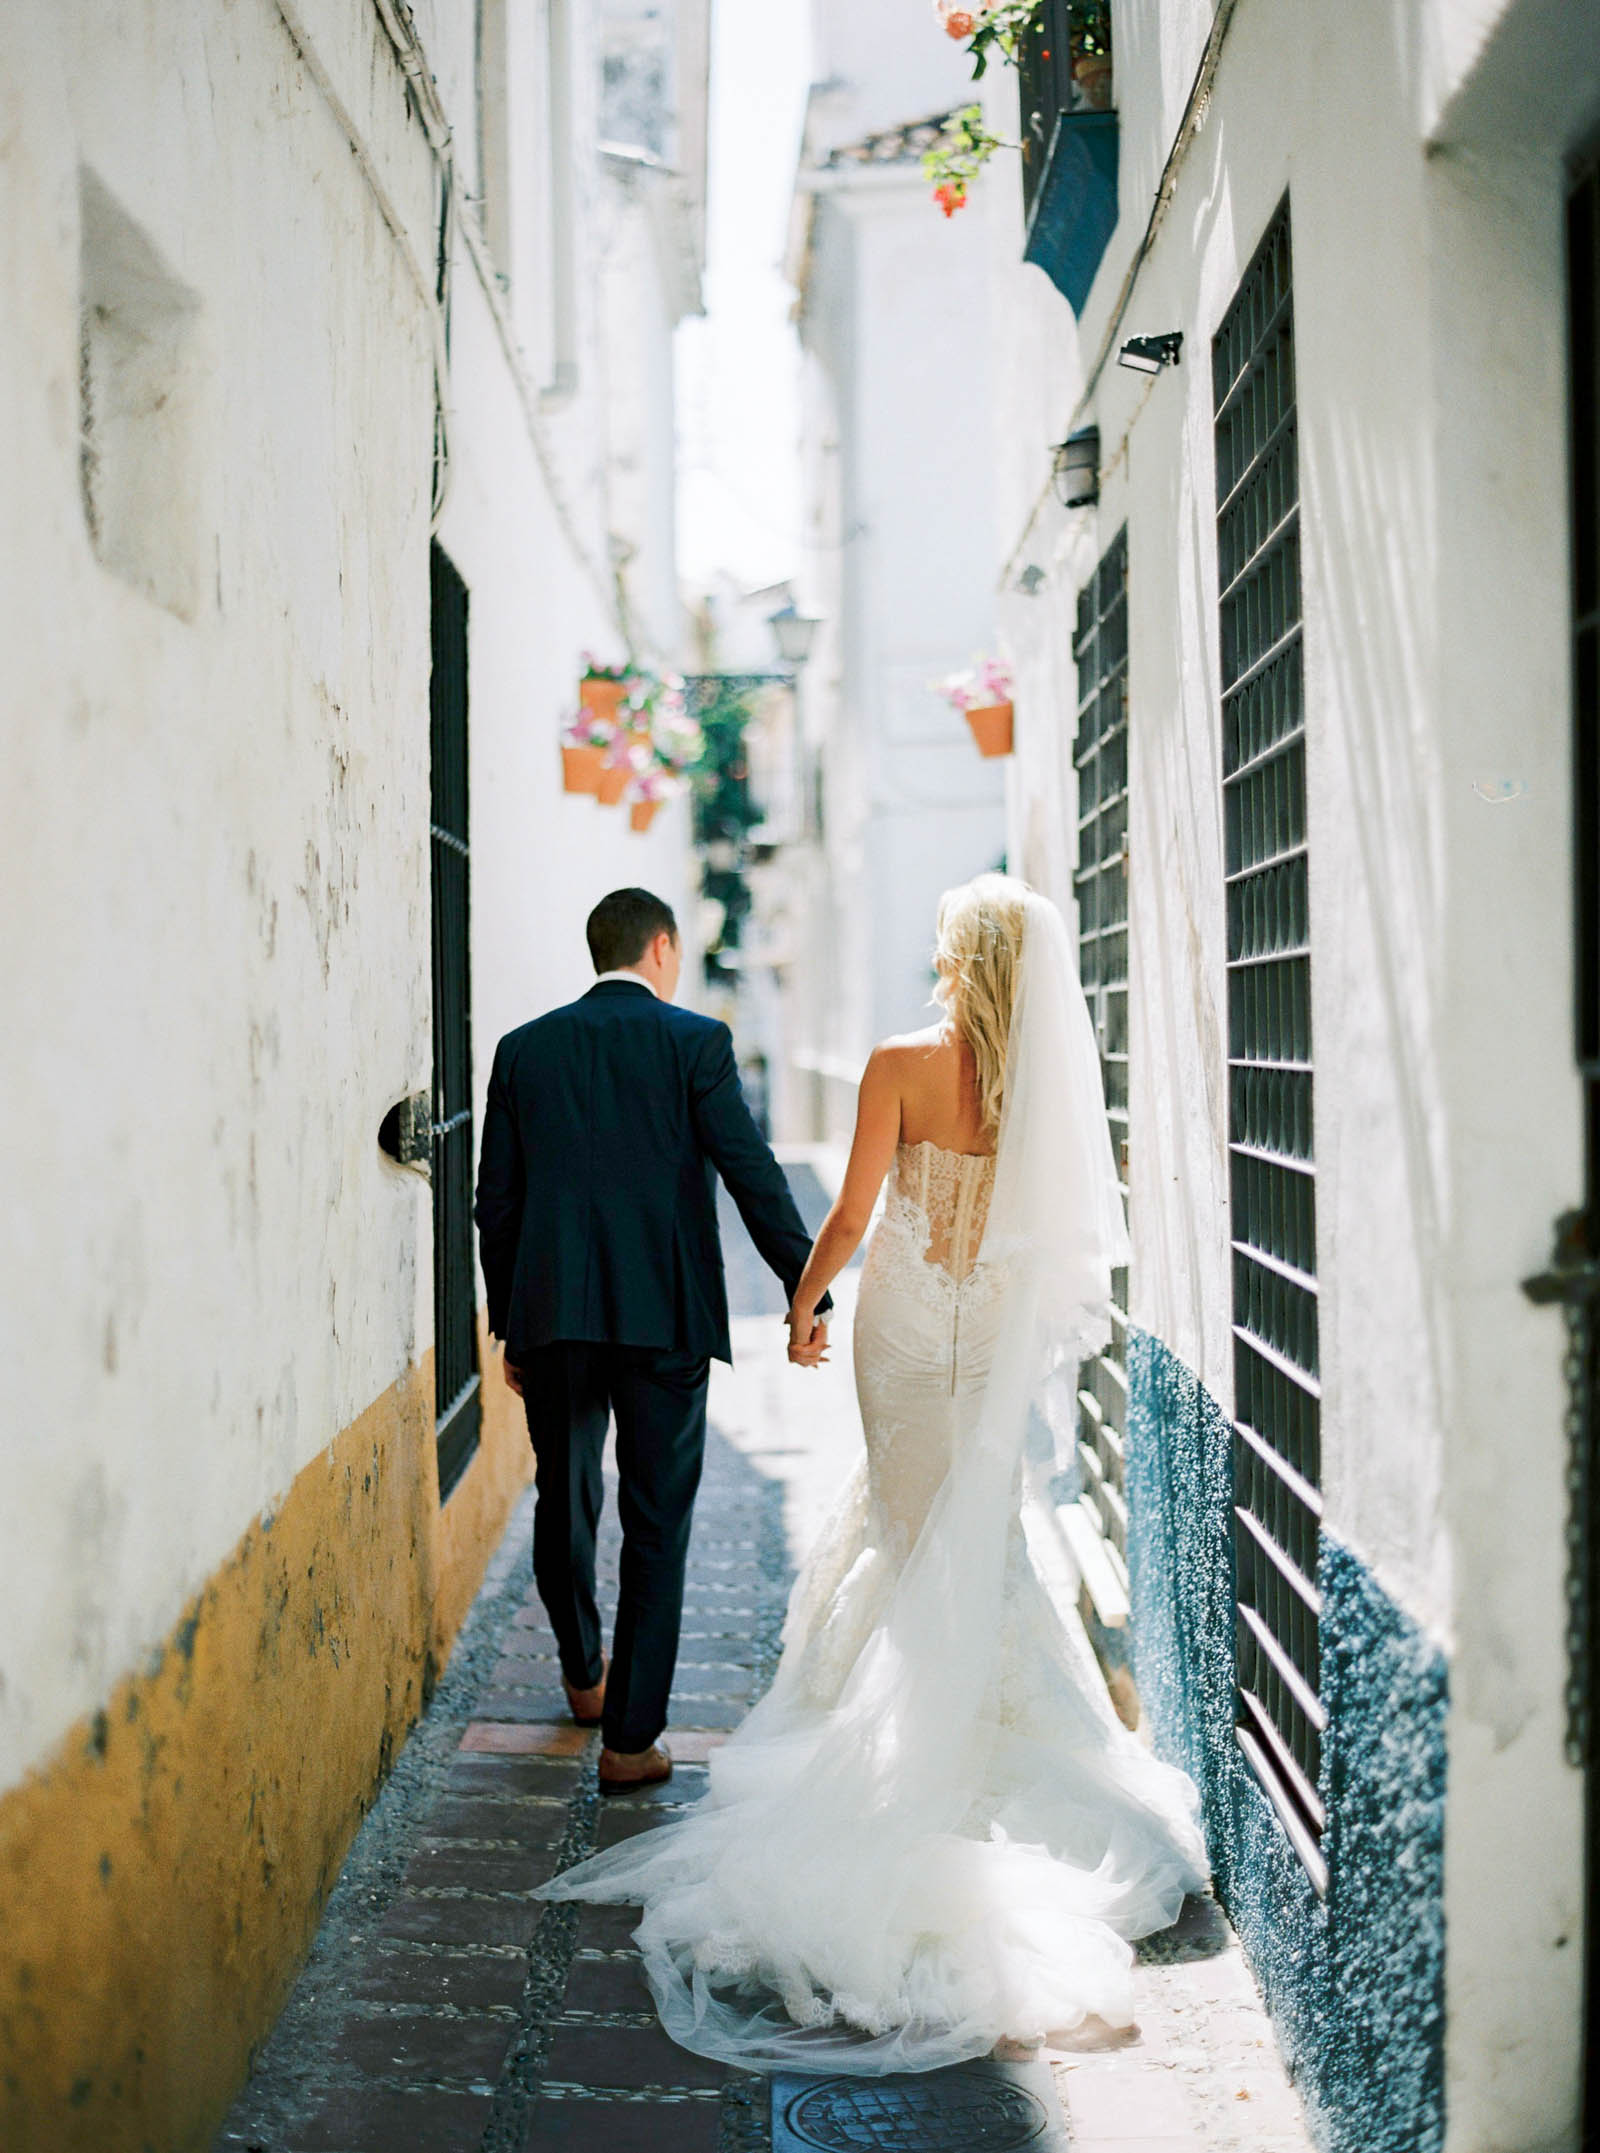 Beautiful wedding in Marbella, Spain at Finca la Concepcion - Krmorenophoto